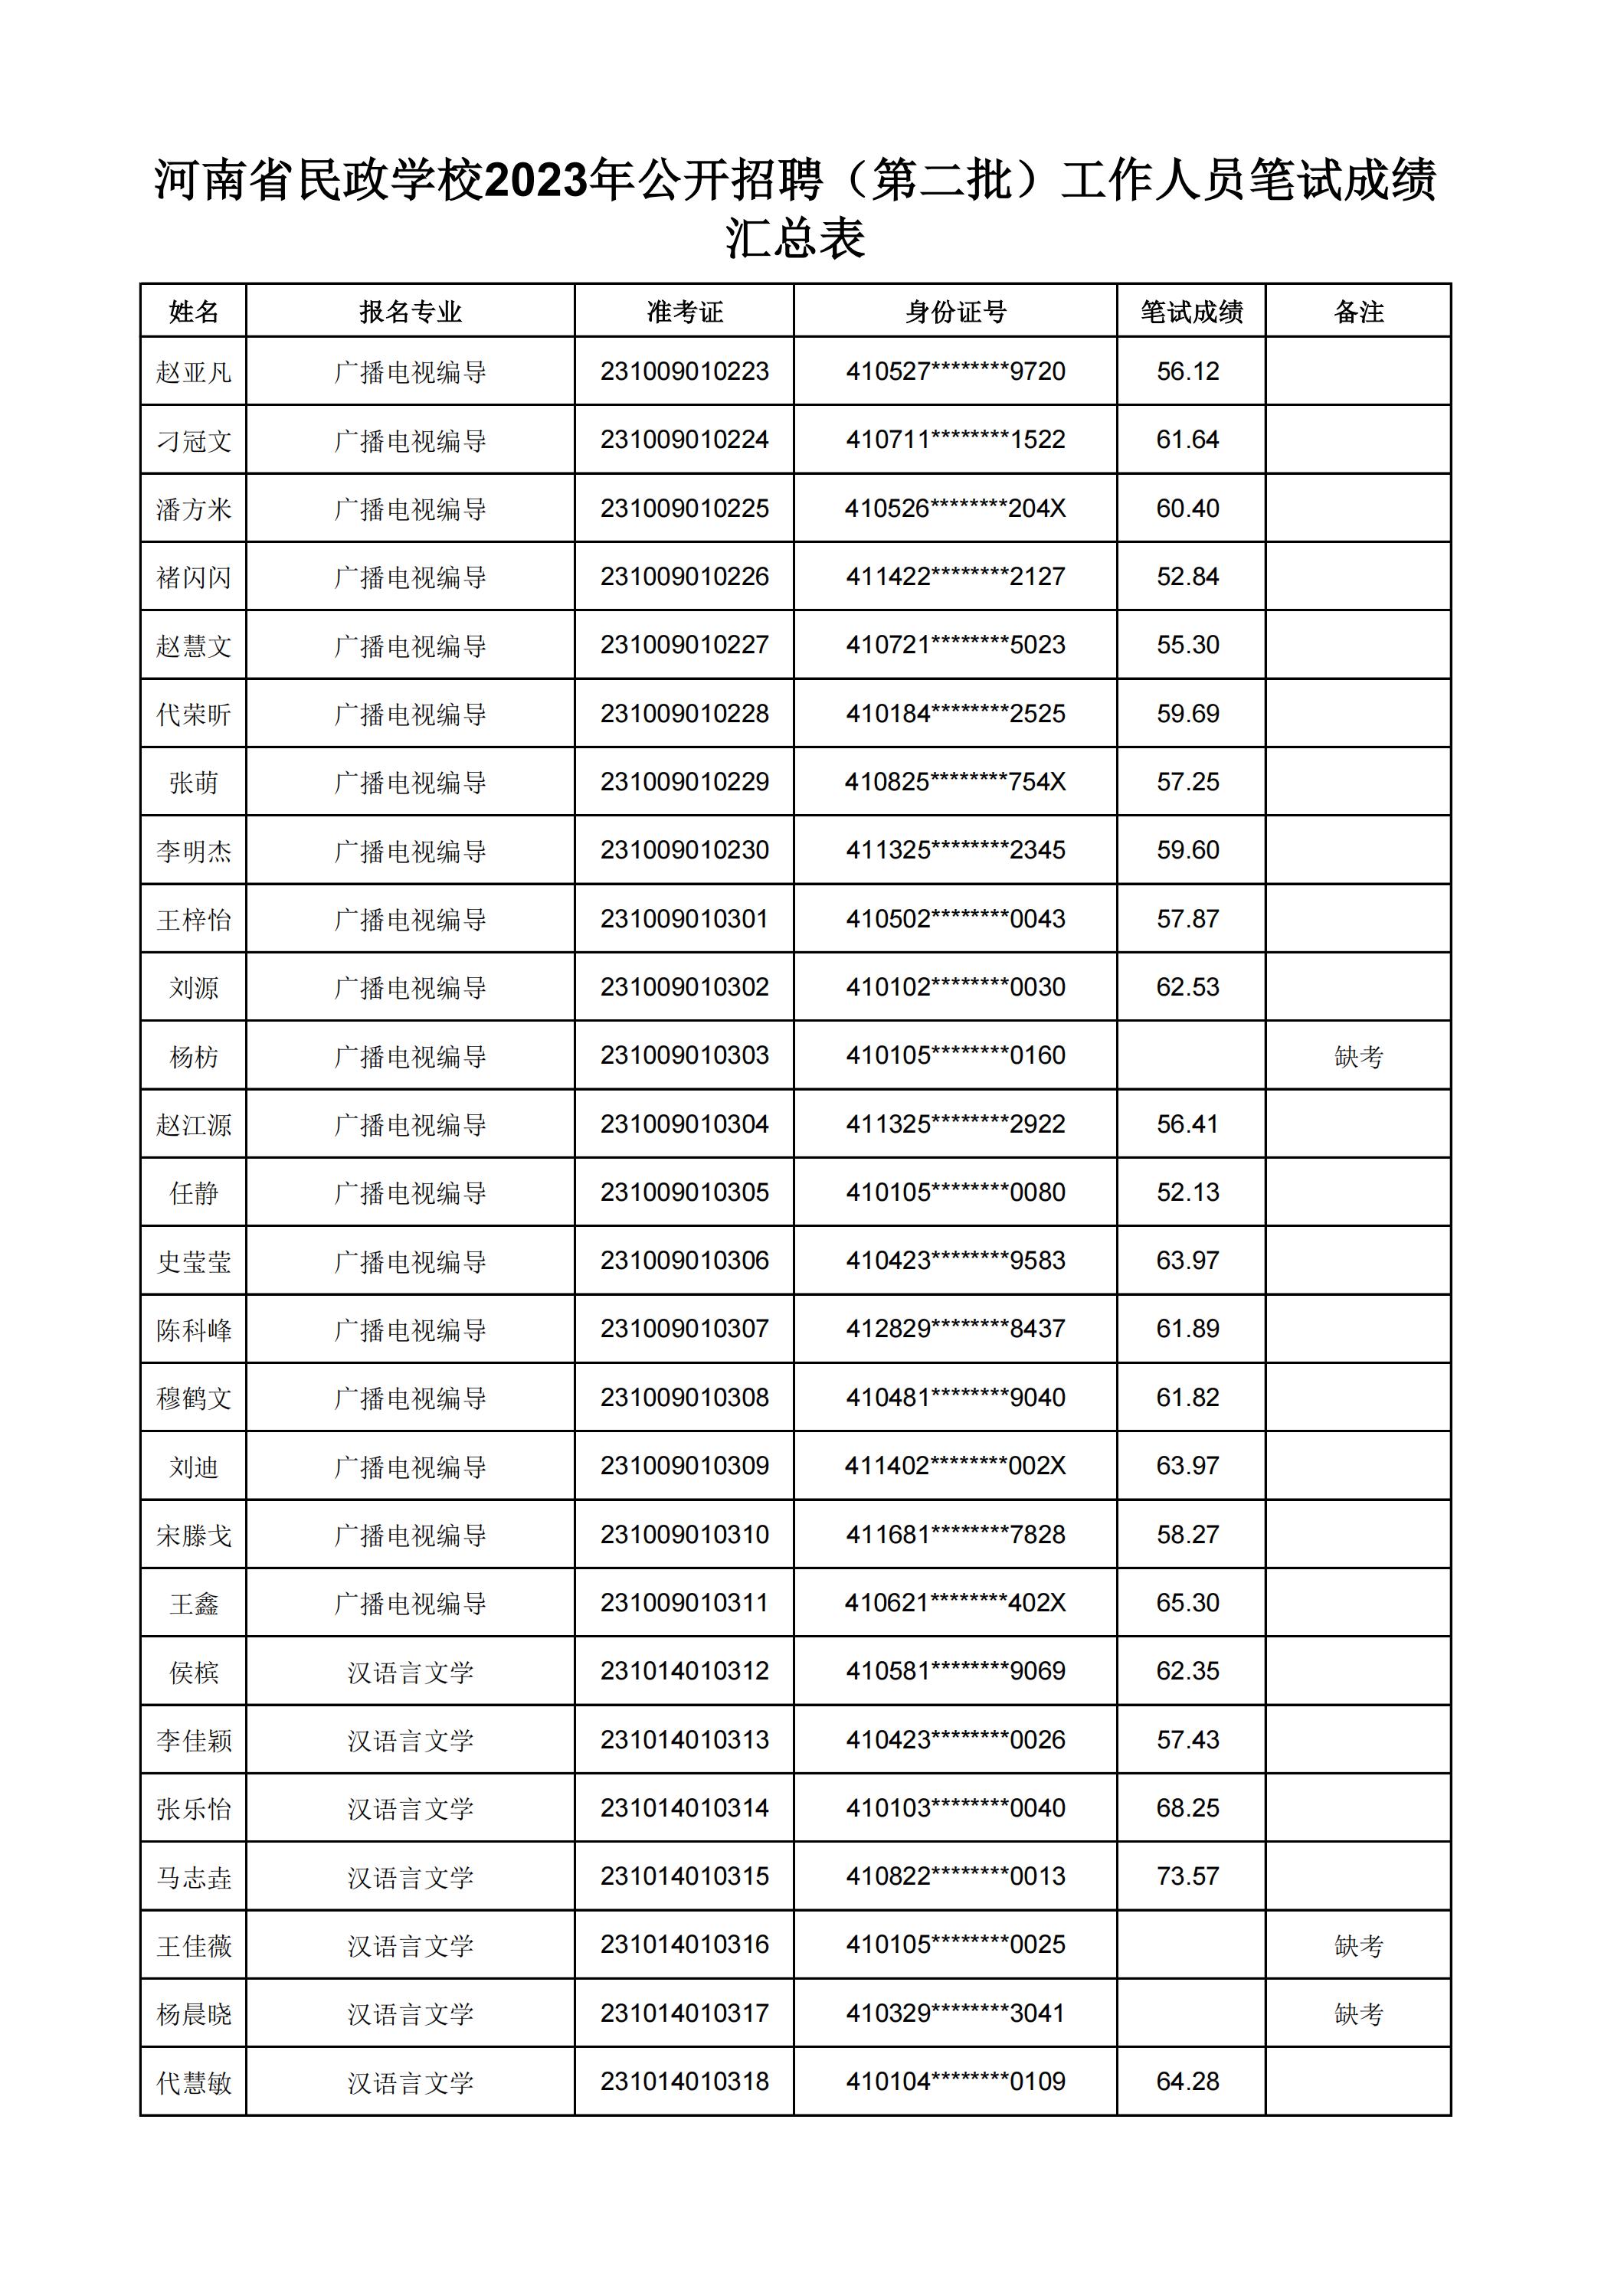 河南省民政学校2023年公开招聘（第二批）工作人员笔试成绩汇总表(2)_02.jpg